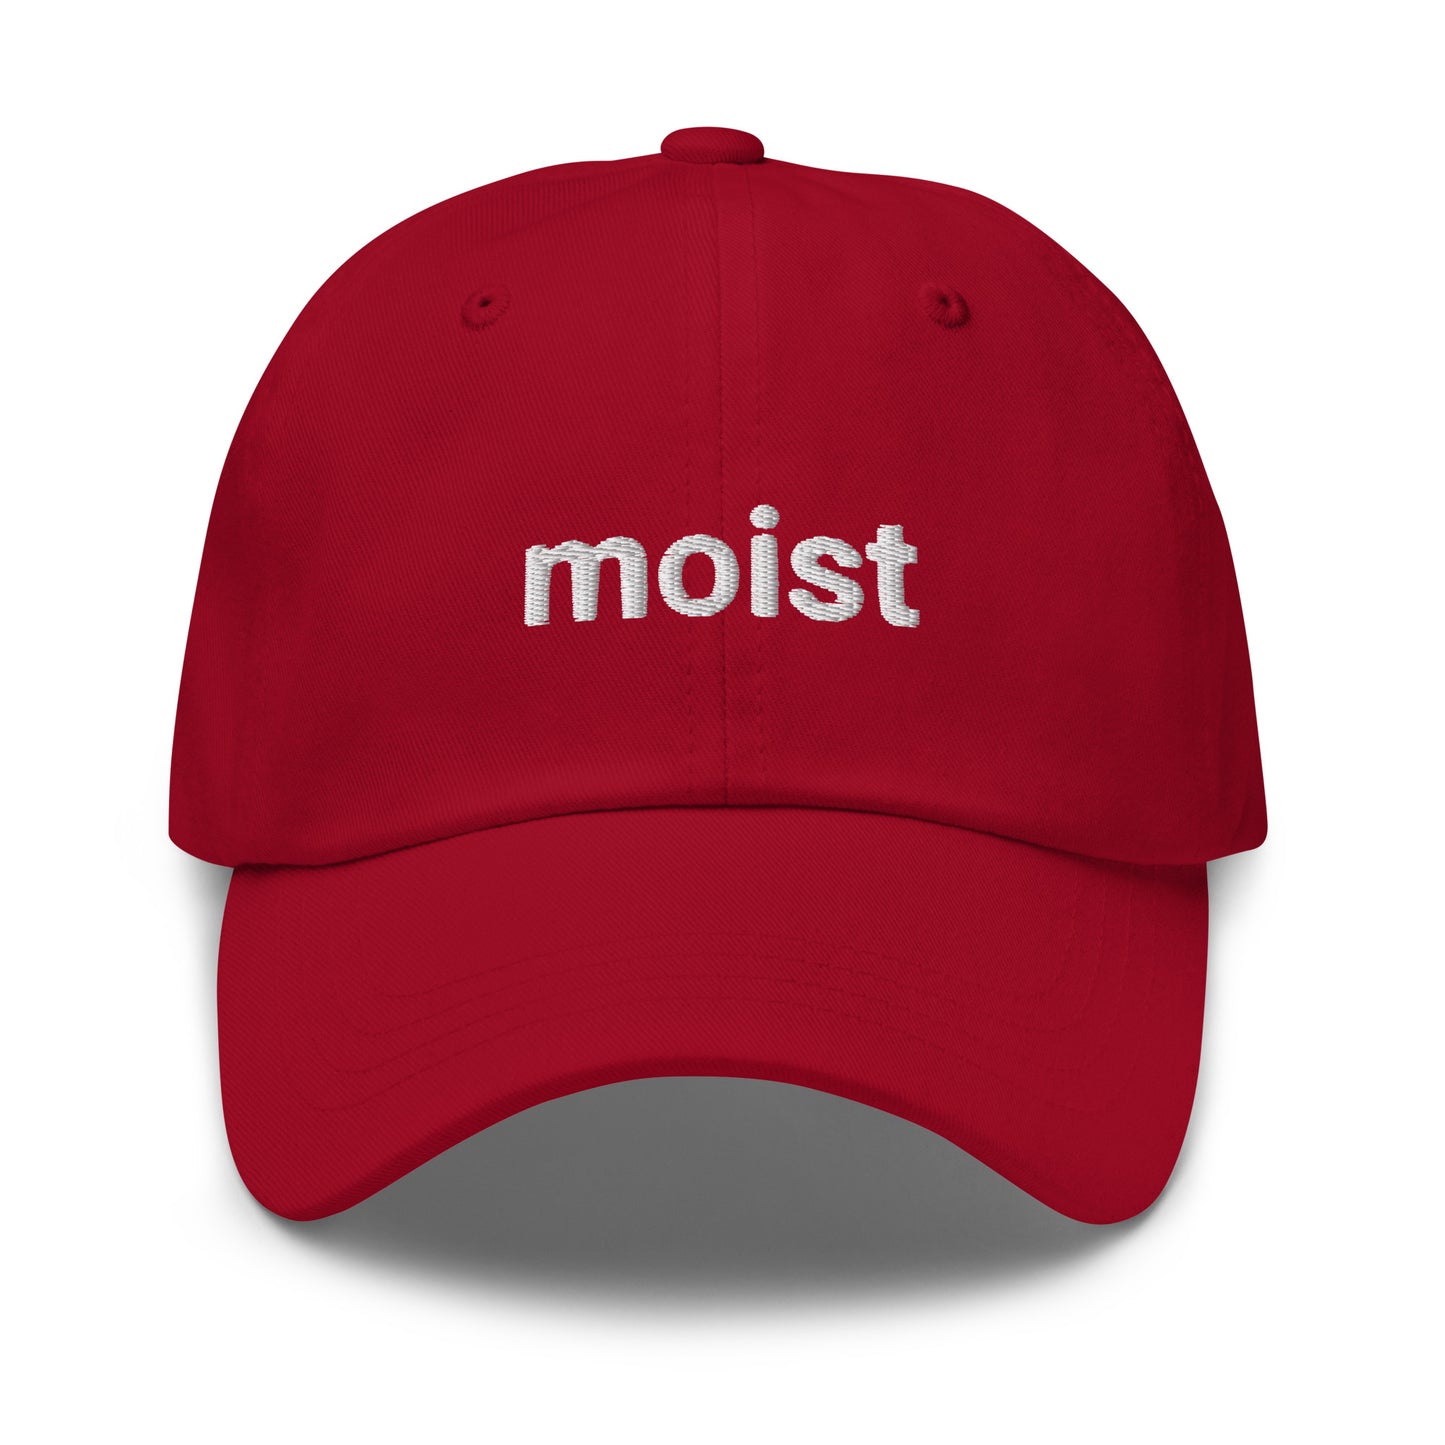 moist hat